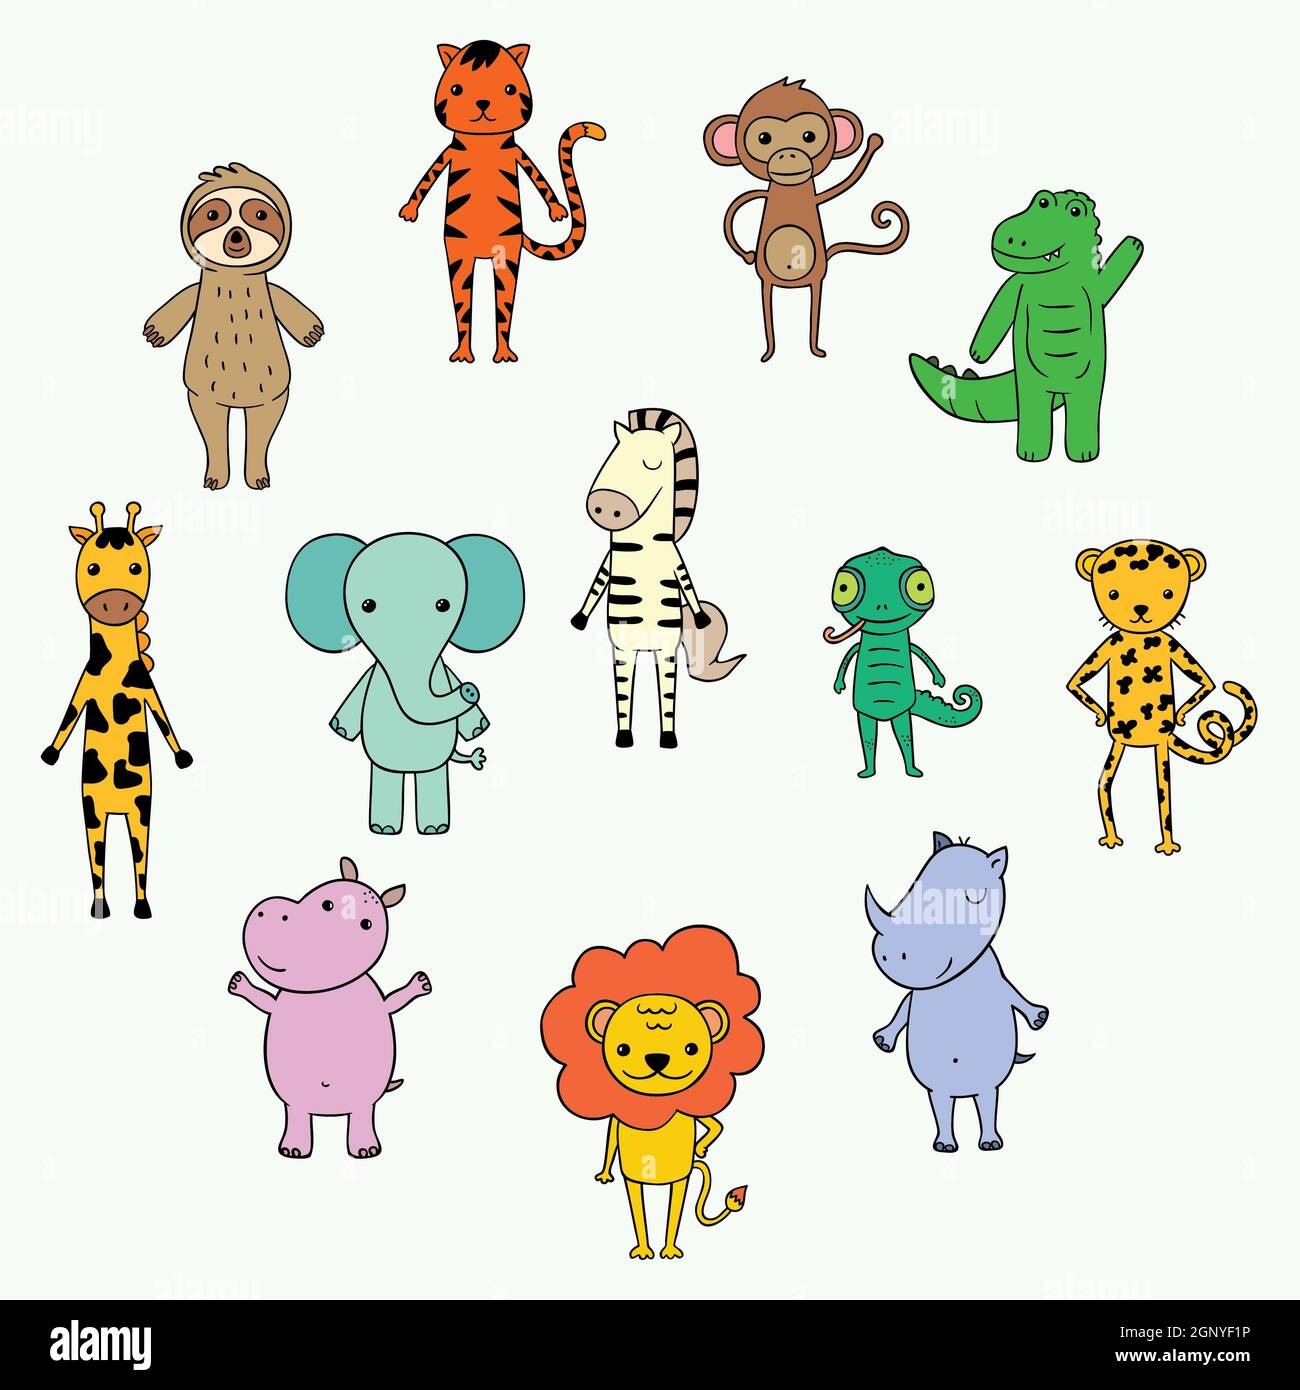 Animaux de la jungle et safari mignons. Personnages du zoo de dessins animés dessinés à la main. Éléphant, lion, cloth, singe, zèbre, girafe. Gribouillages colorés Banque D'Images